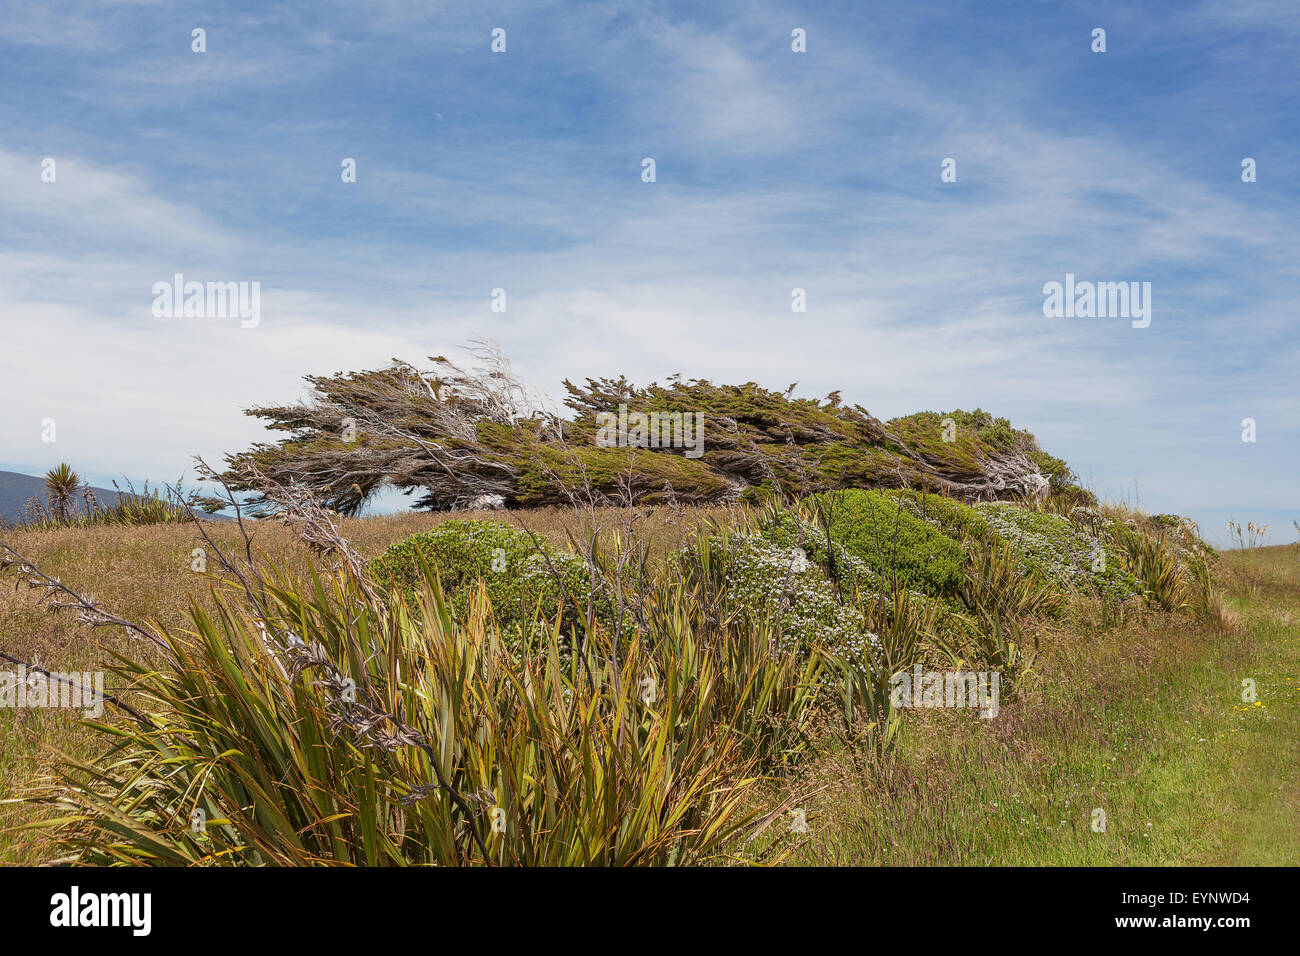 Les arbres tordus par emblématique de la Nouvelle-Zélande. Southland, île du Sud, Nouvelle-Zélande. Banque D'Images